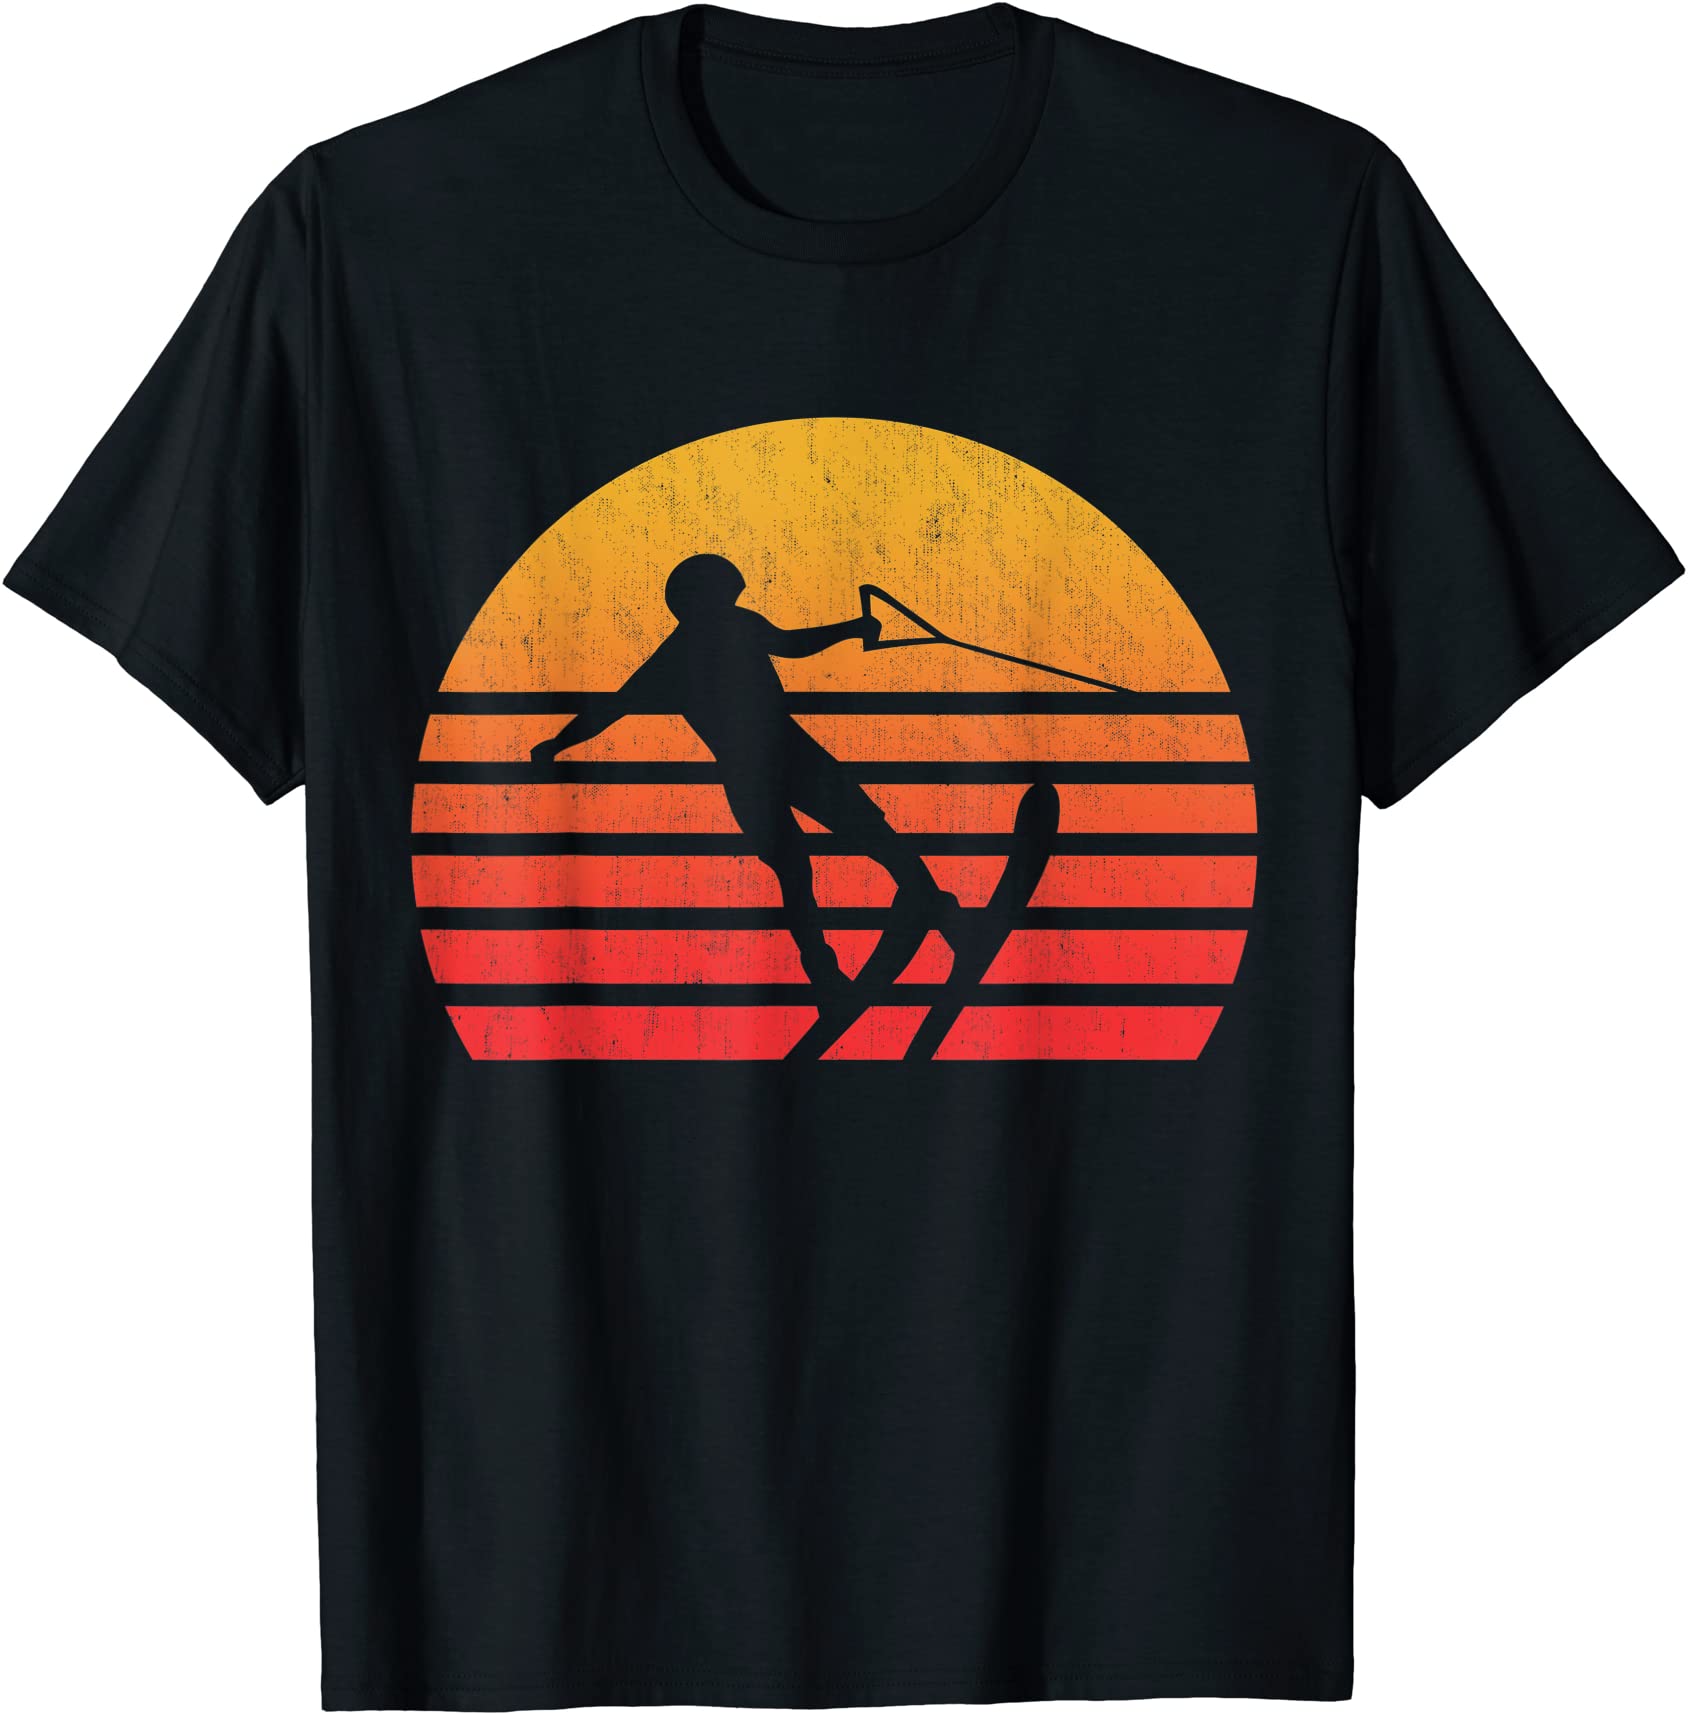 vintage retro sunset water skiing t shirt men - Buy t-shirt designs